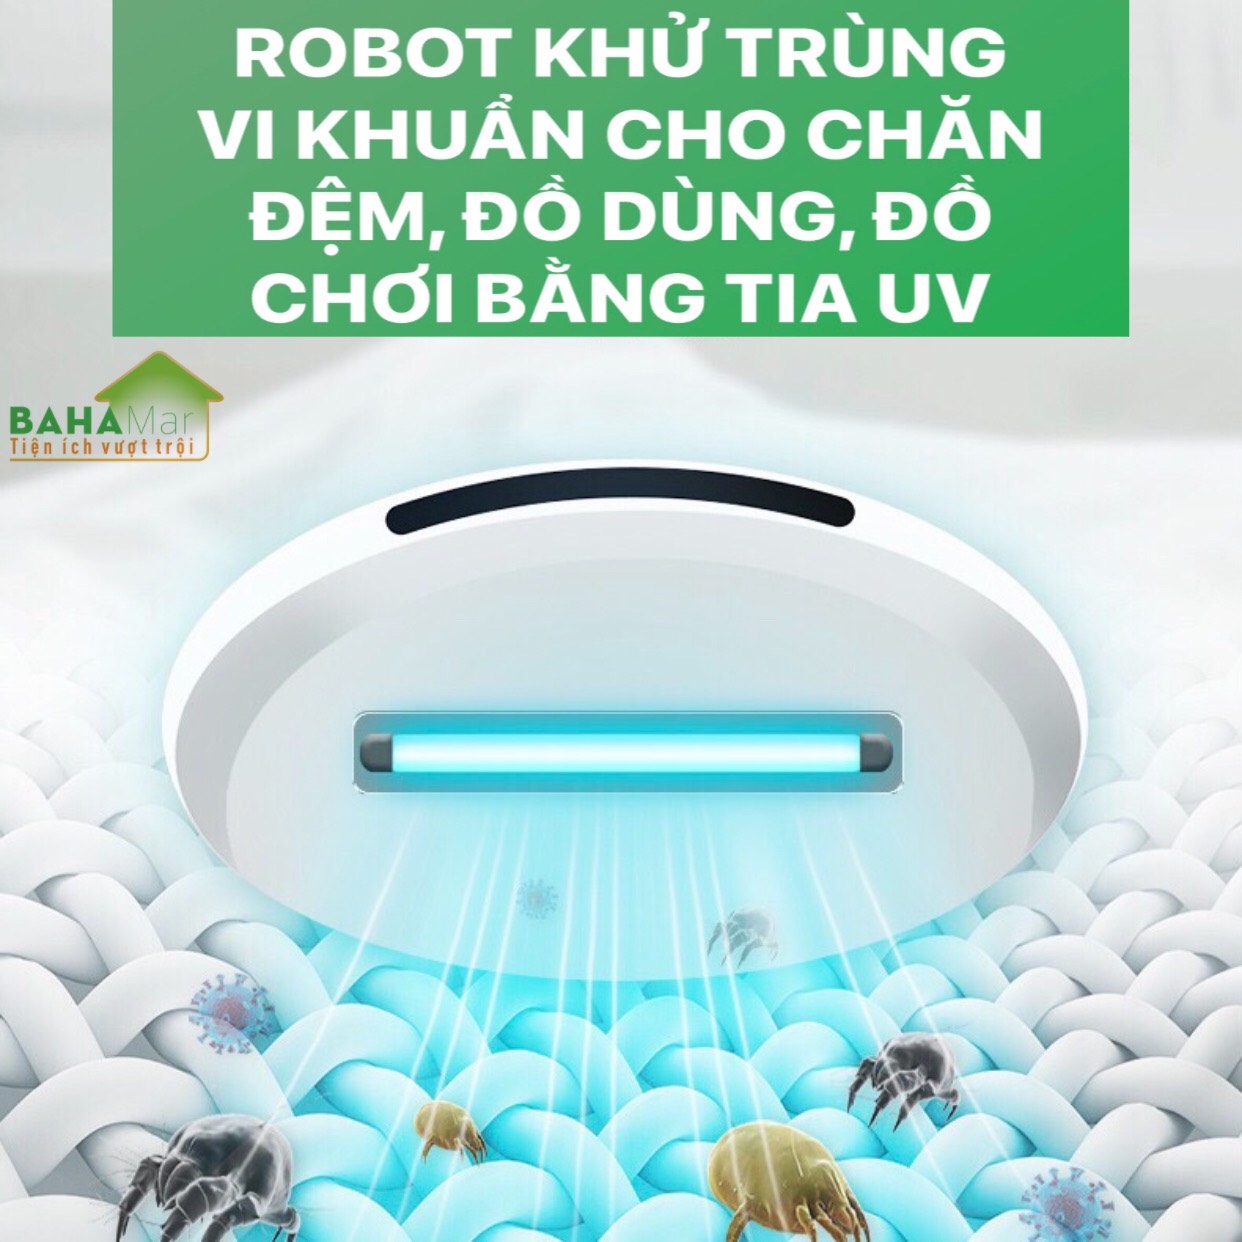 ROBOT KHỬ TRÙNG VI KHUẨN CHO CHĂN ĐỆM, ĐỒ DÙNG, ĐỒ CHƠI BẰNG TIA UV "BAHAMAR" có thể khử trùng và giết chết 99.9% vi khuẩn. Cảm Biến thông minh giúp Robot sẽ không bao giờ bị kẹt trong giường hoặc rơi khỏi giường